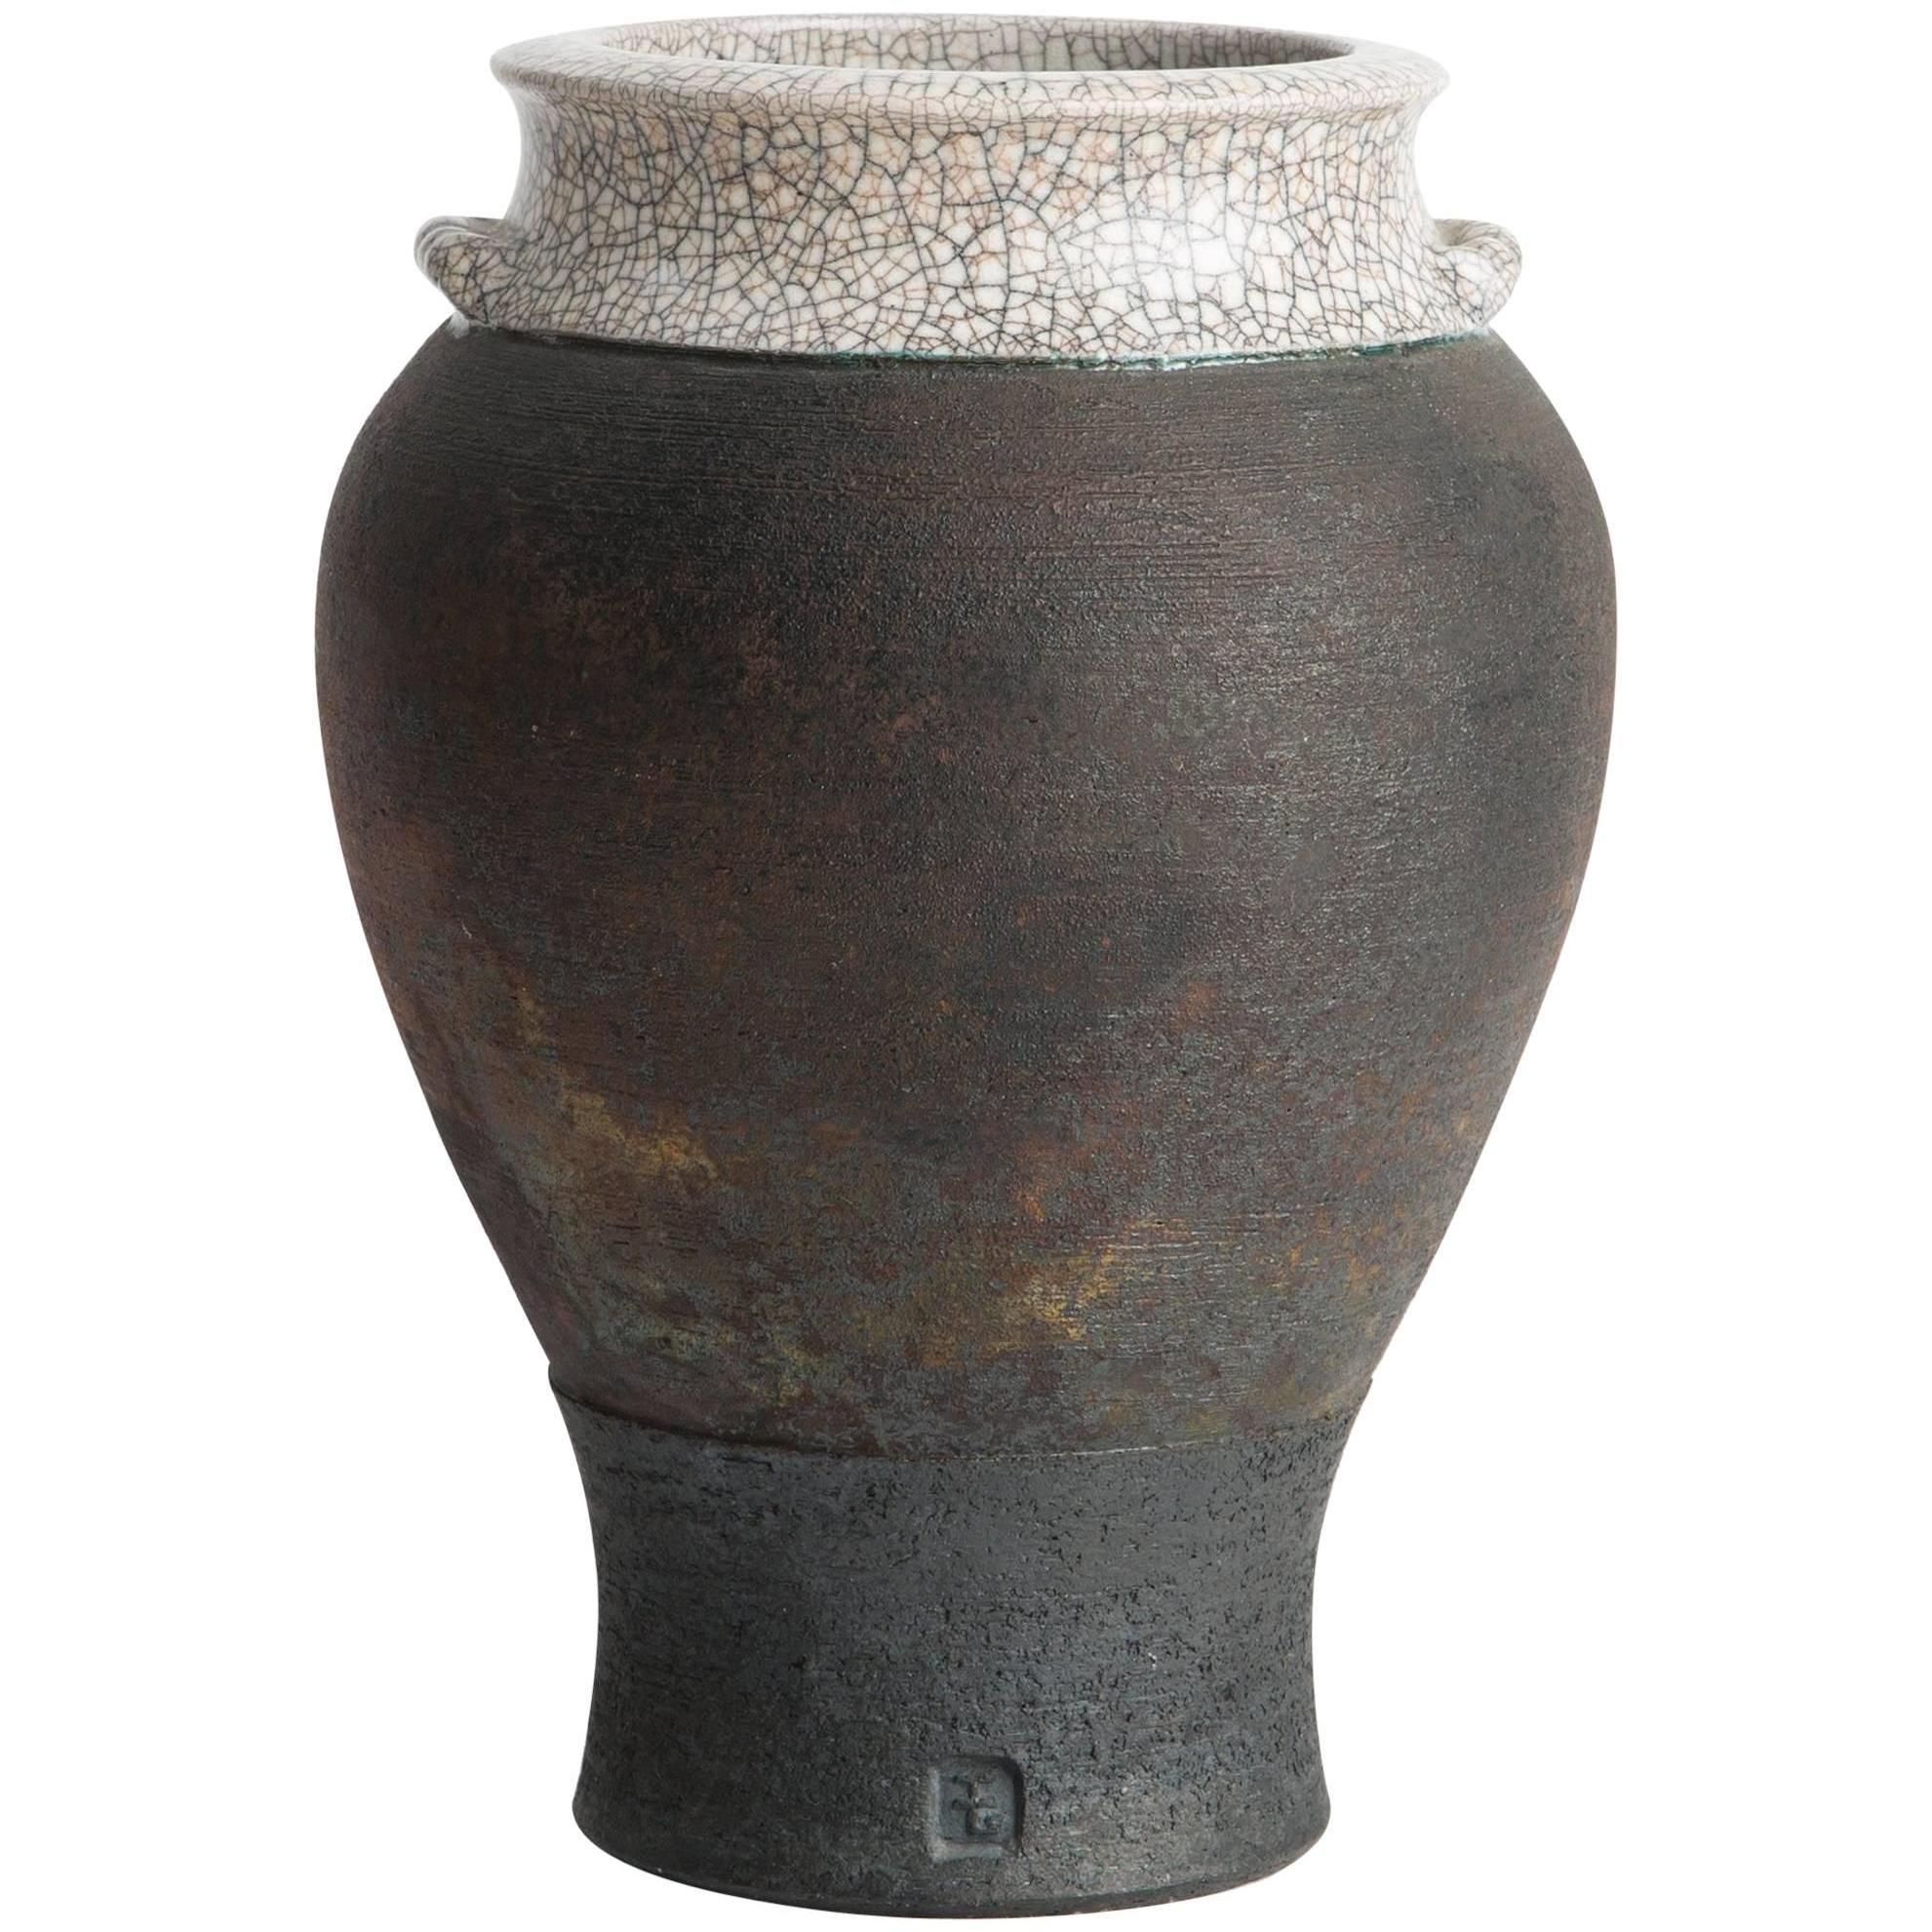 Classically Shaped Crackle Glaze Vase